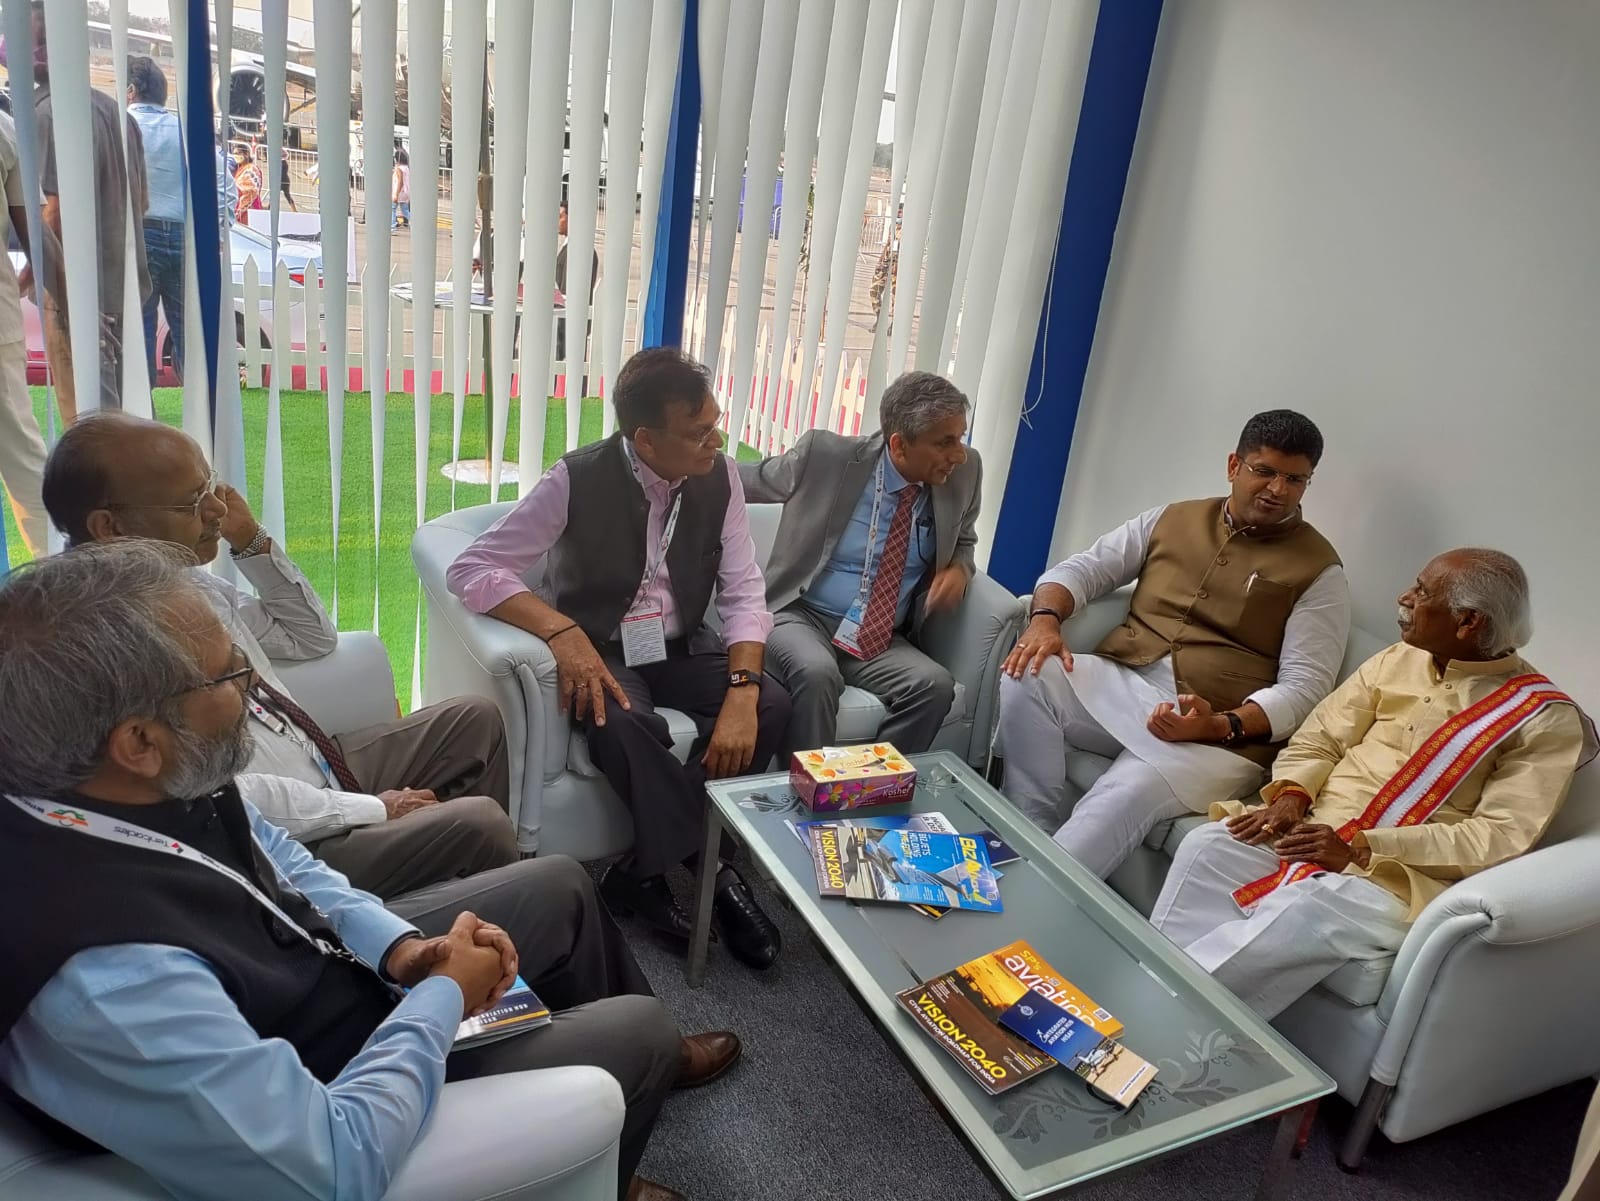 हरियाणा के राज्यपाल श्री बंडारू दत्तात्रेय ने आयोजित चार दिवसीय ‘‘विंग्स इंडिया 2022‘‘ में हरियाणा पैवेलियन का दौरा किया